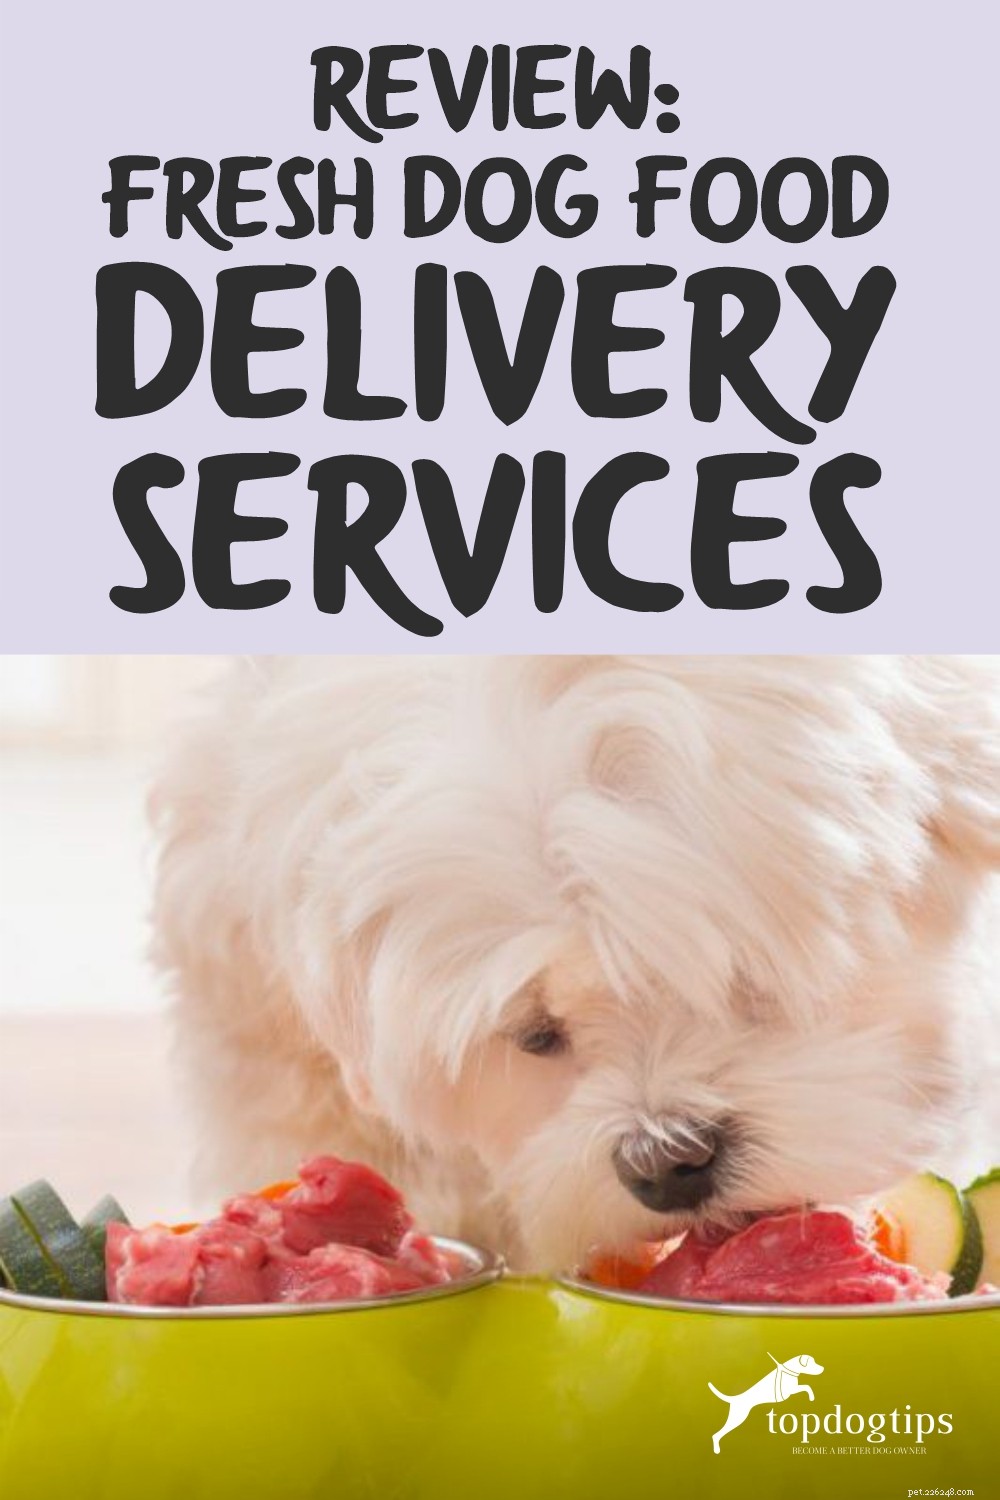 Revisão:Serviços de entrega de comida fresca para cães